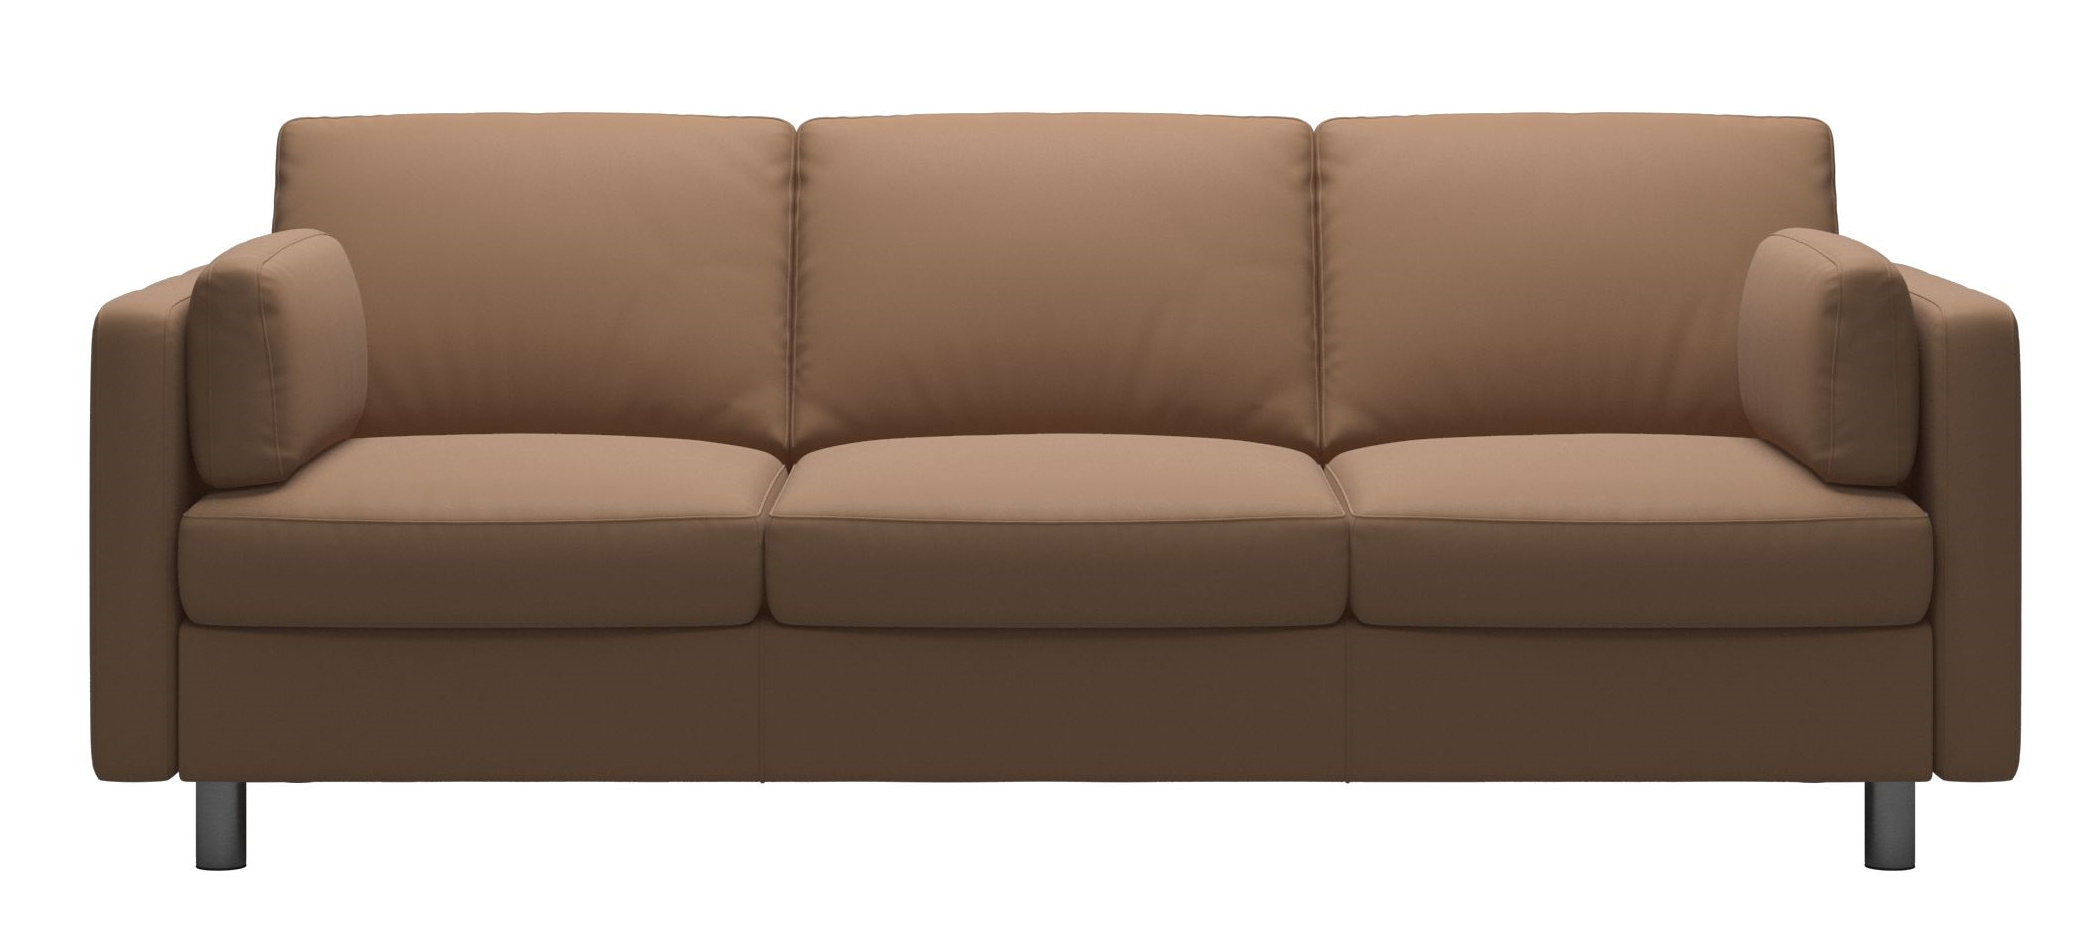 Canapea cu 3 locuri Stressless Emma E600 Classic picioare metalice 11cm piele Batik Latte 11cm imagine model 2022